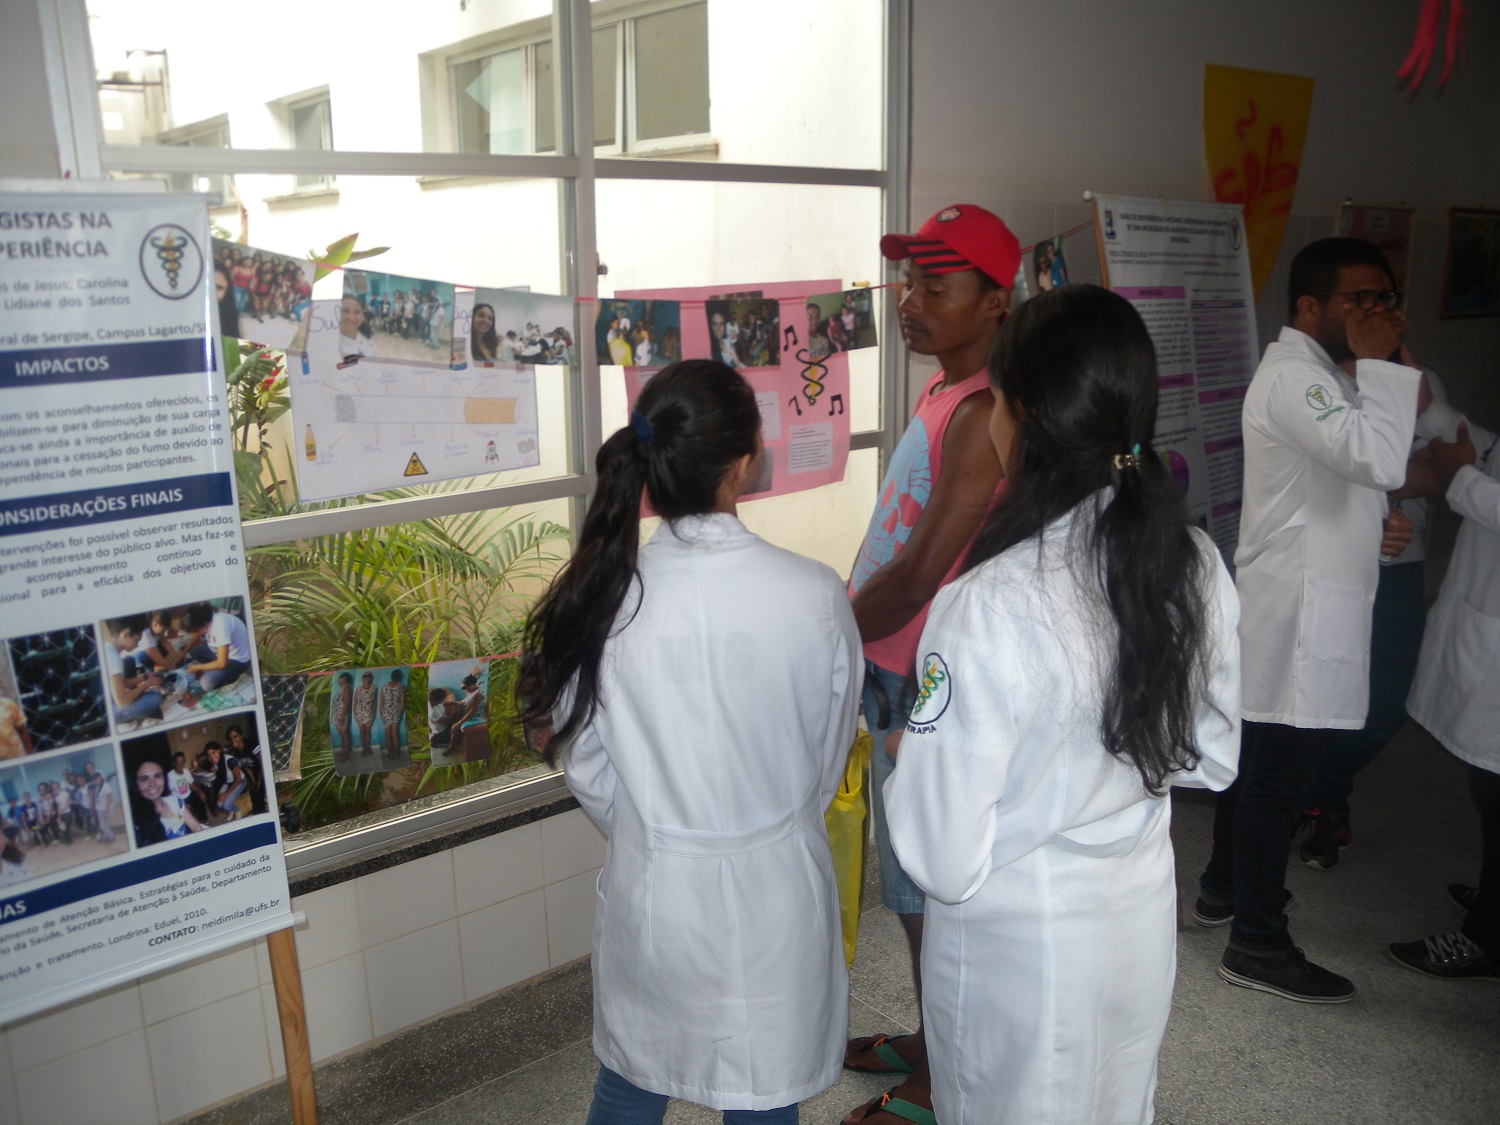 Estudantes explicam as fotos das atividades realizadas no Bairro Loiola